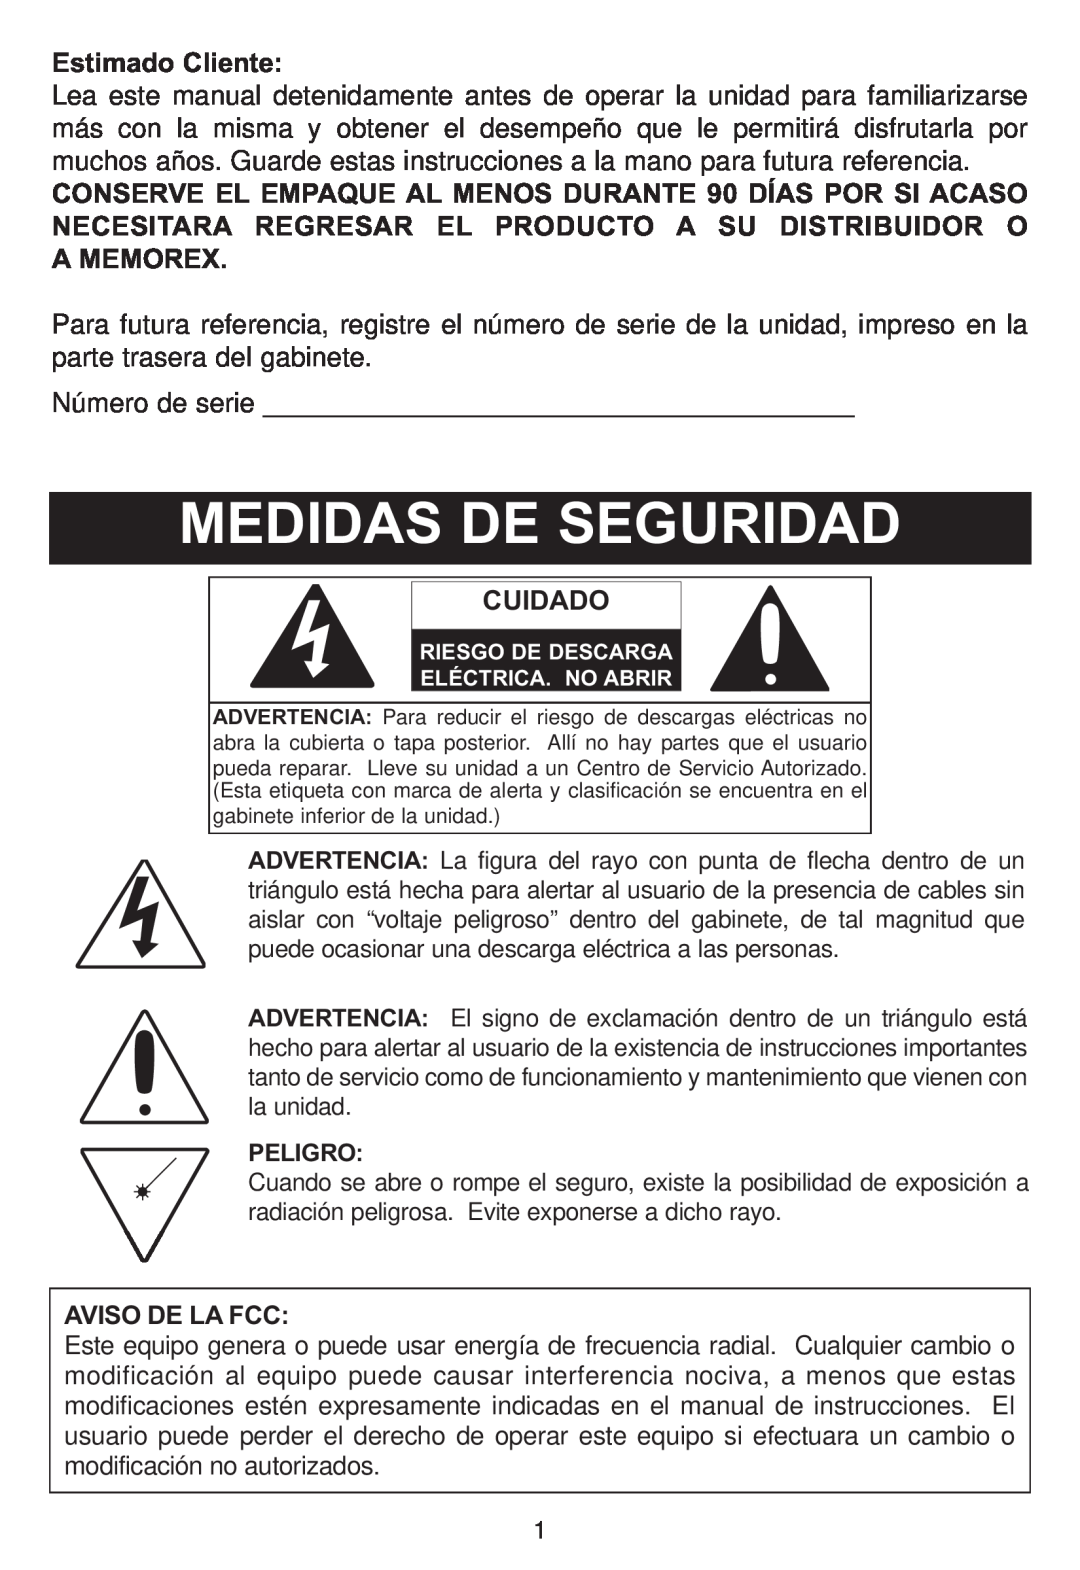 Memorex MP4047 manual Estimado Cliente, Cuidado, Aviso De La Fcc, Peligro 